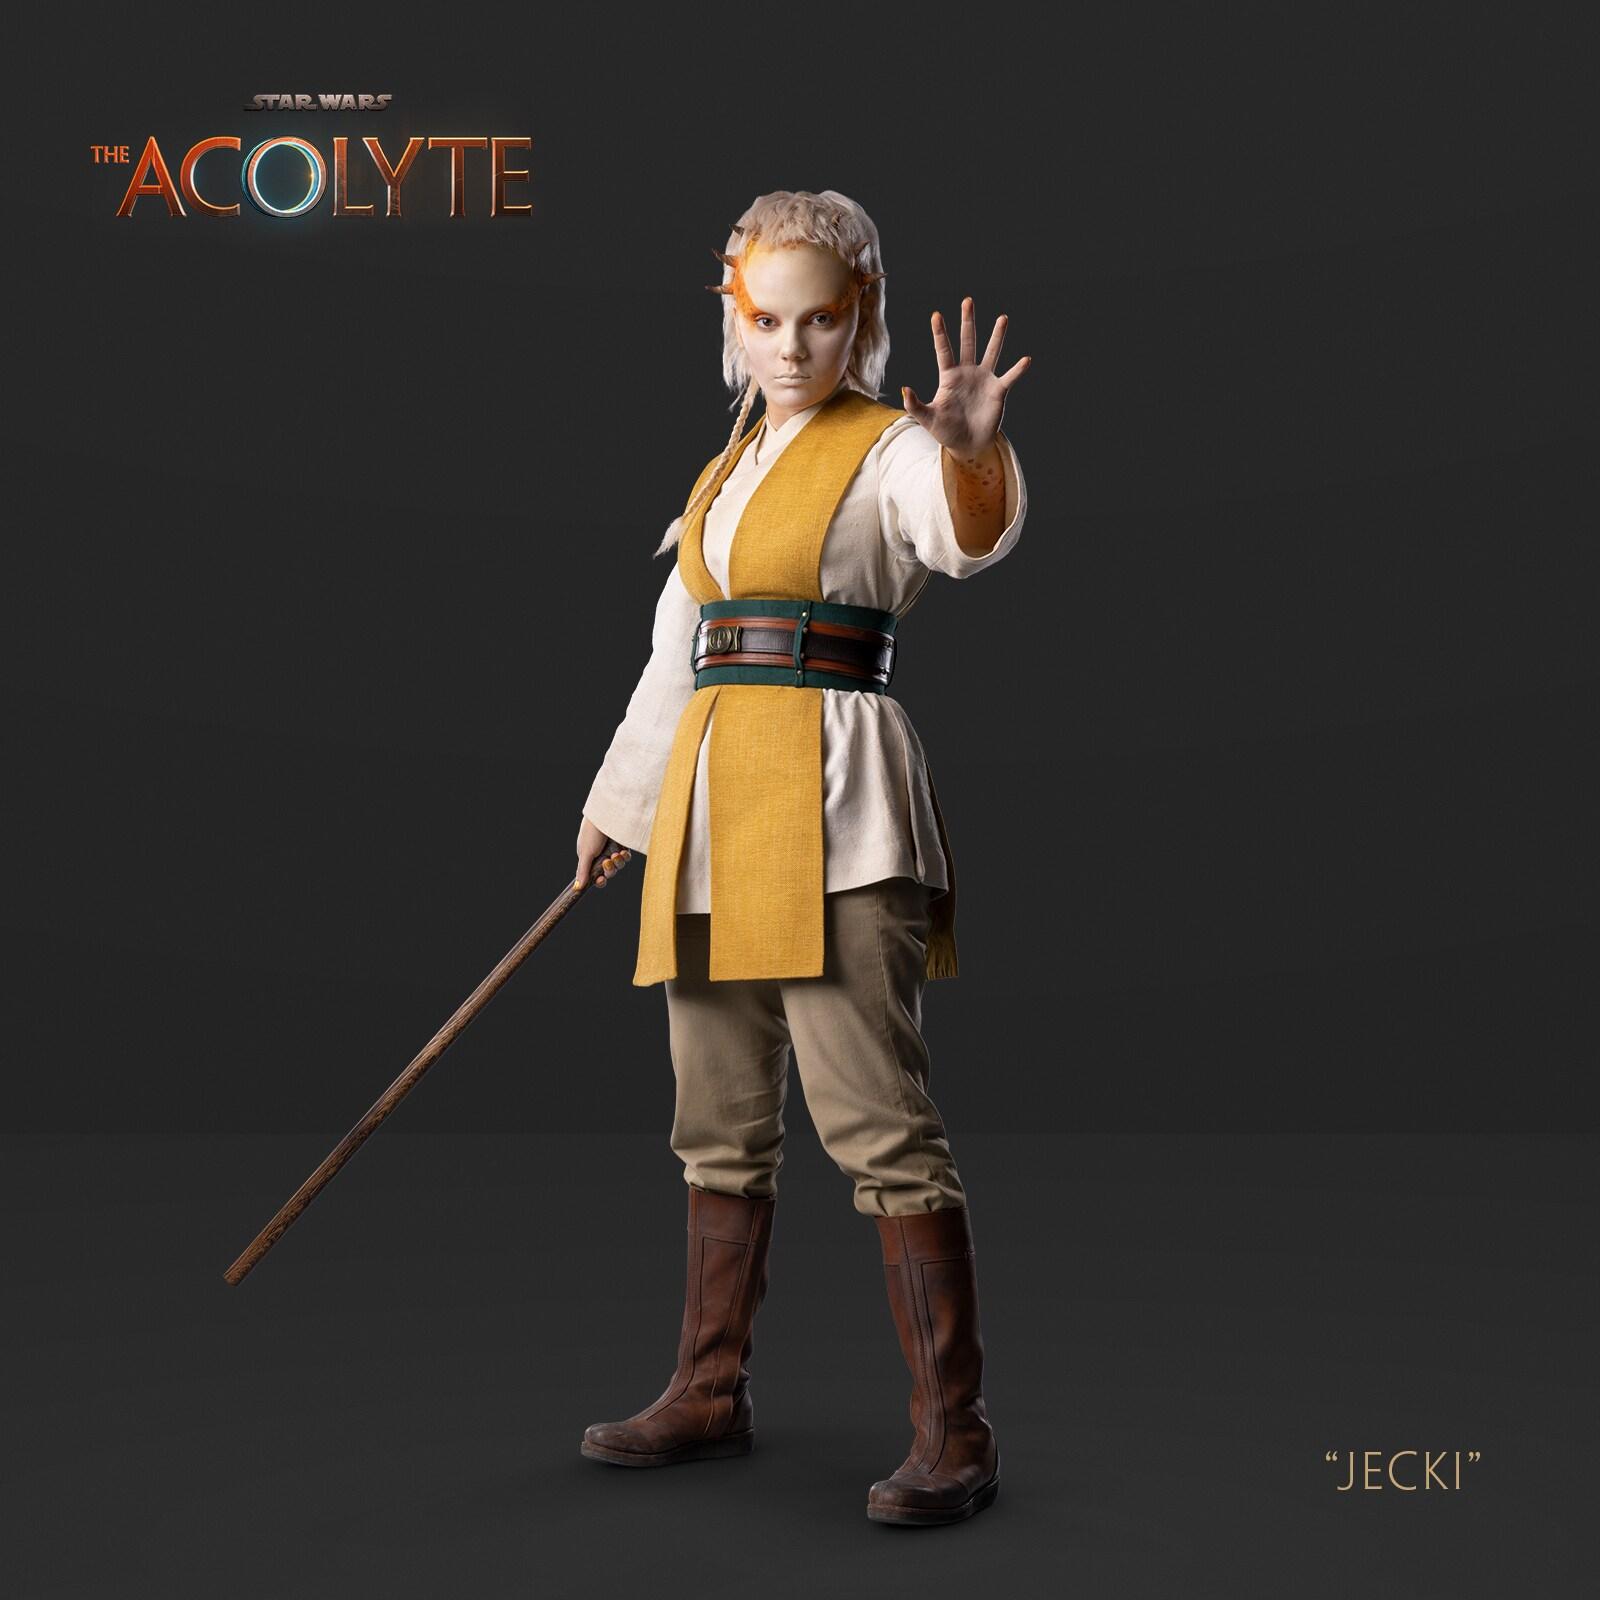 Star Wars 'The Acolyte' - Jecki Lon Belt Buckle 3d model